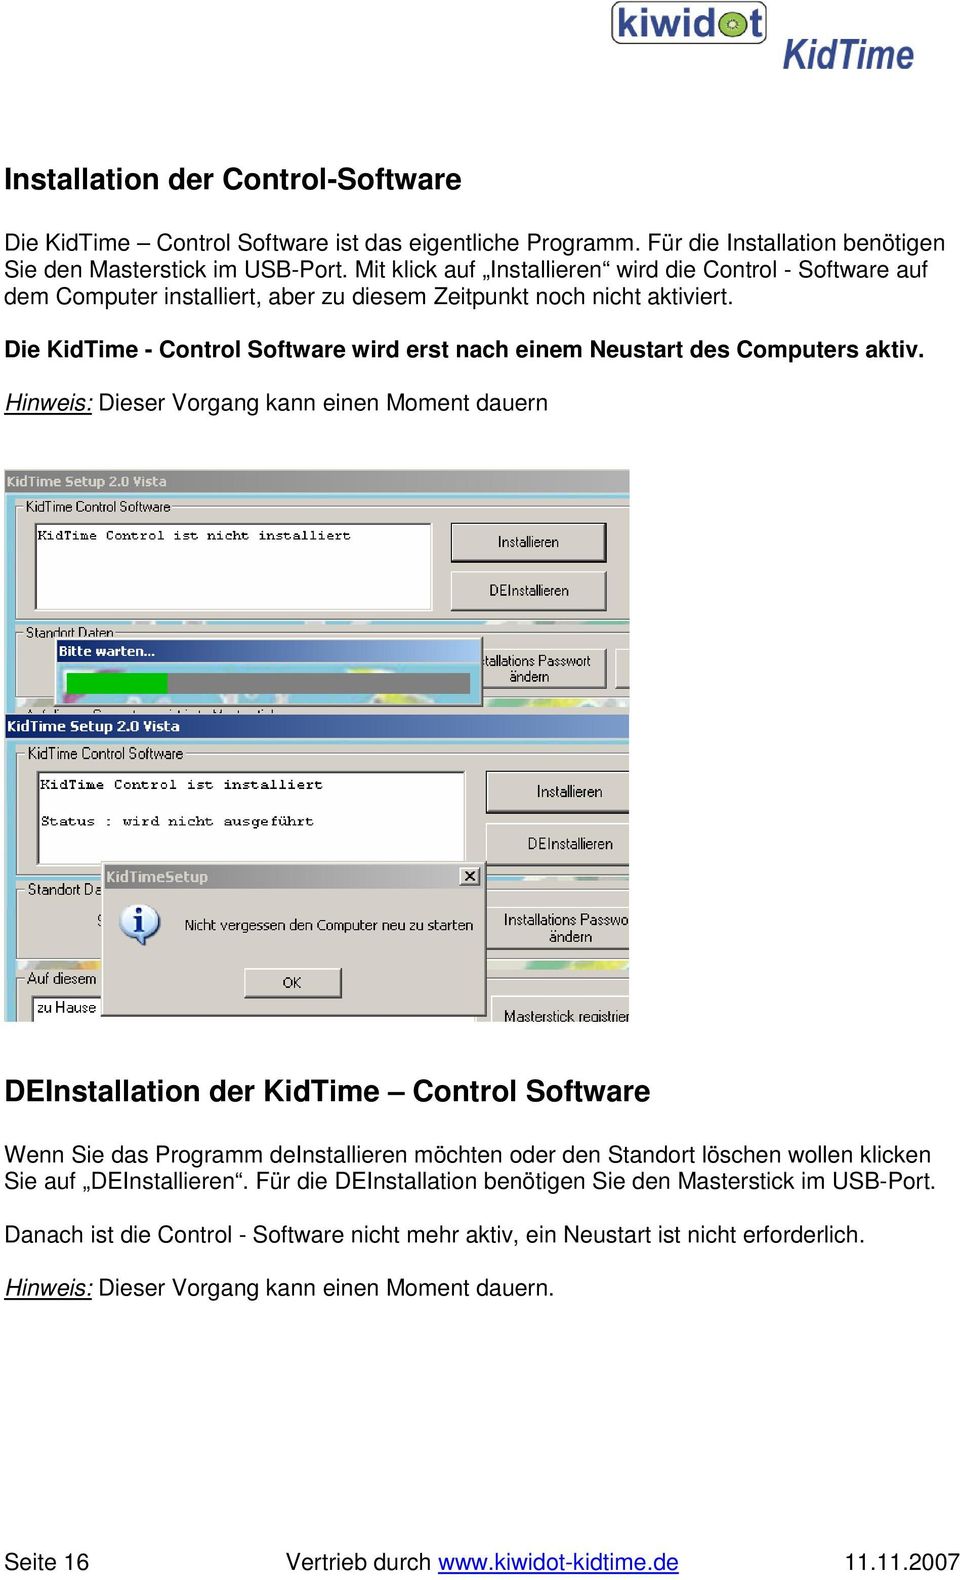 Die KidTime - Control Software wird erst nach einem Neustart des Computers aktiv.